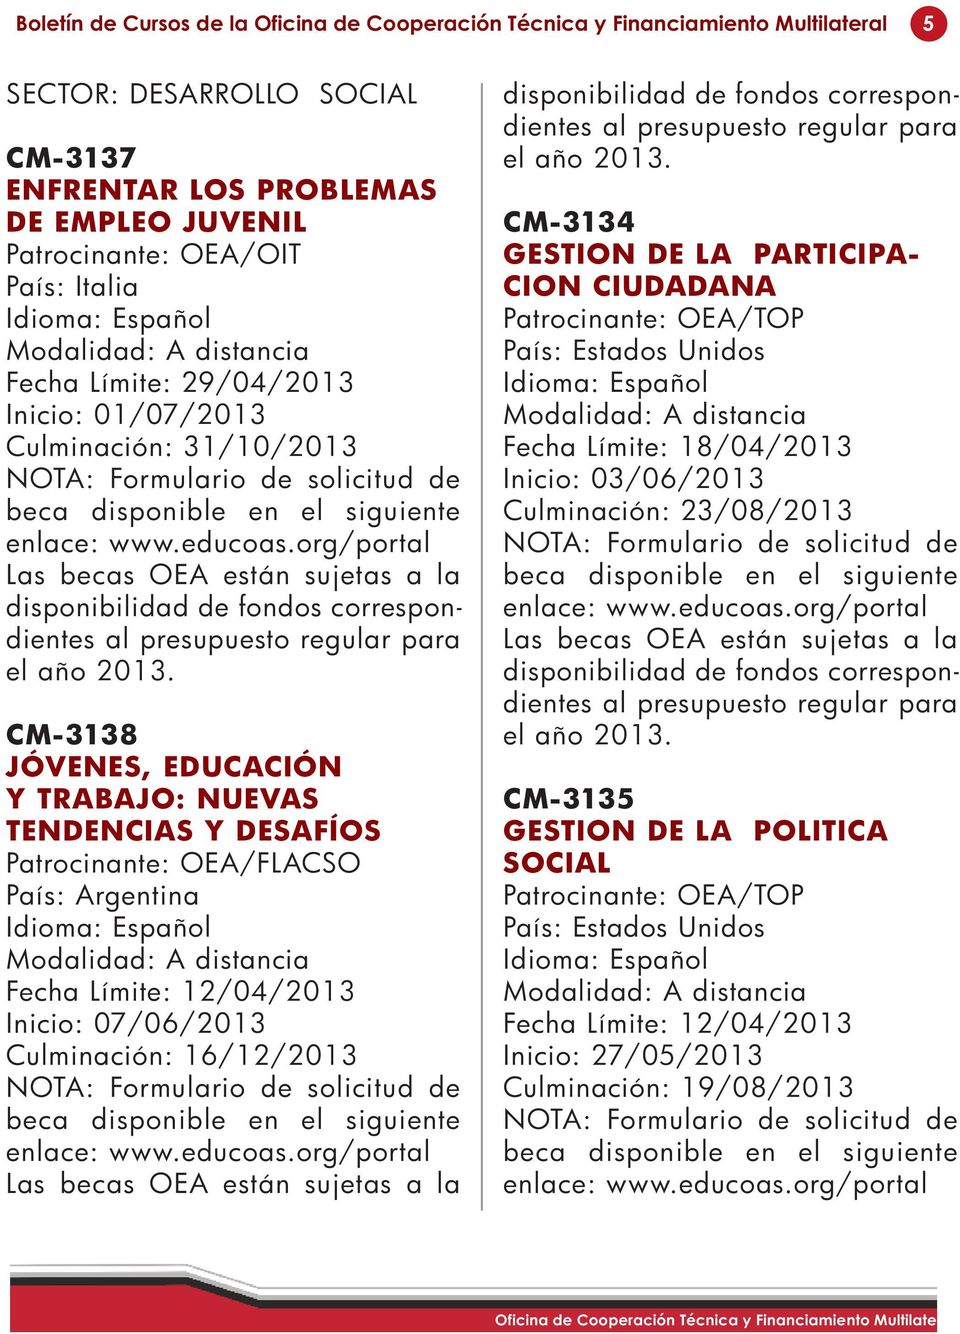 País: Argentina Fecha Límite: 12/04/2013 Inicio: 07/06/2013 Culminación: 16/12/2013 CM-3134 GESTION DE LA PARTICIPA- CION CIUDADANA Fecha Límite: